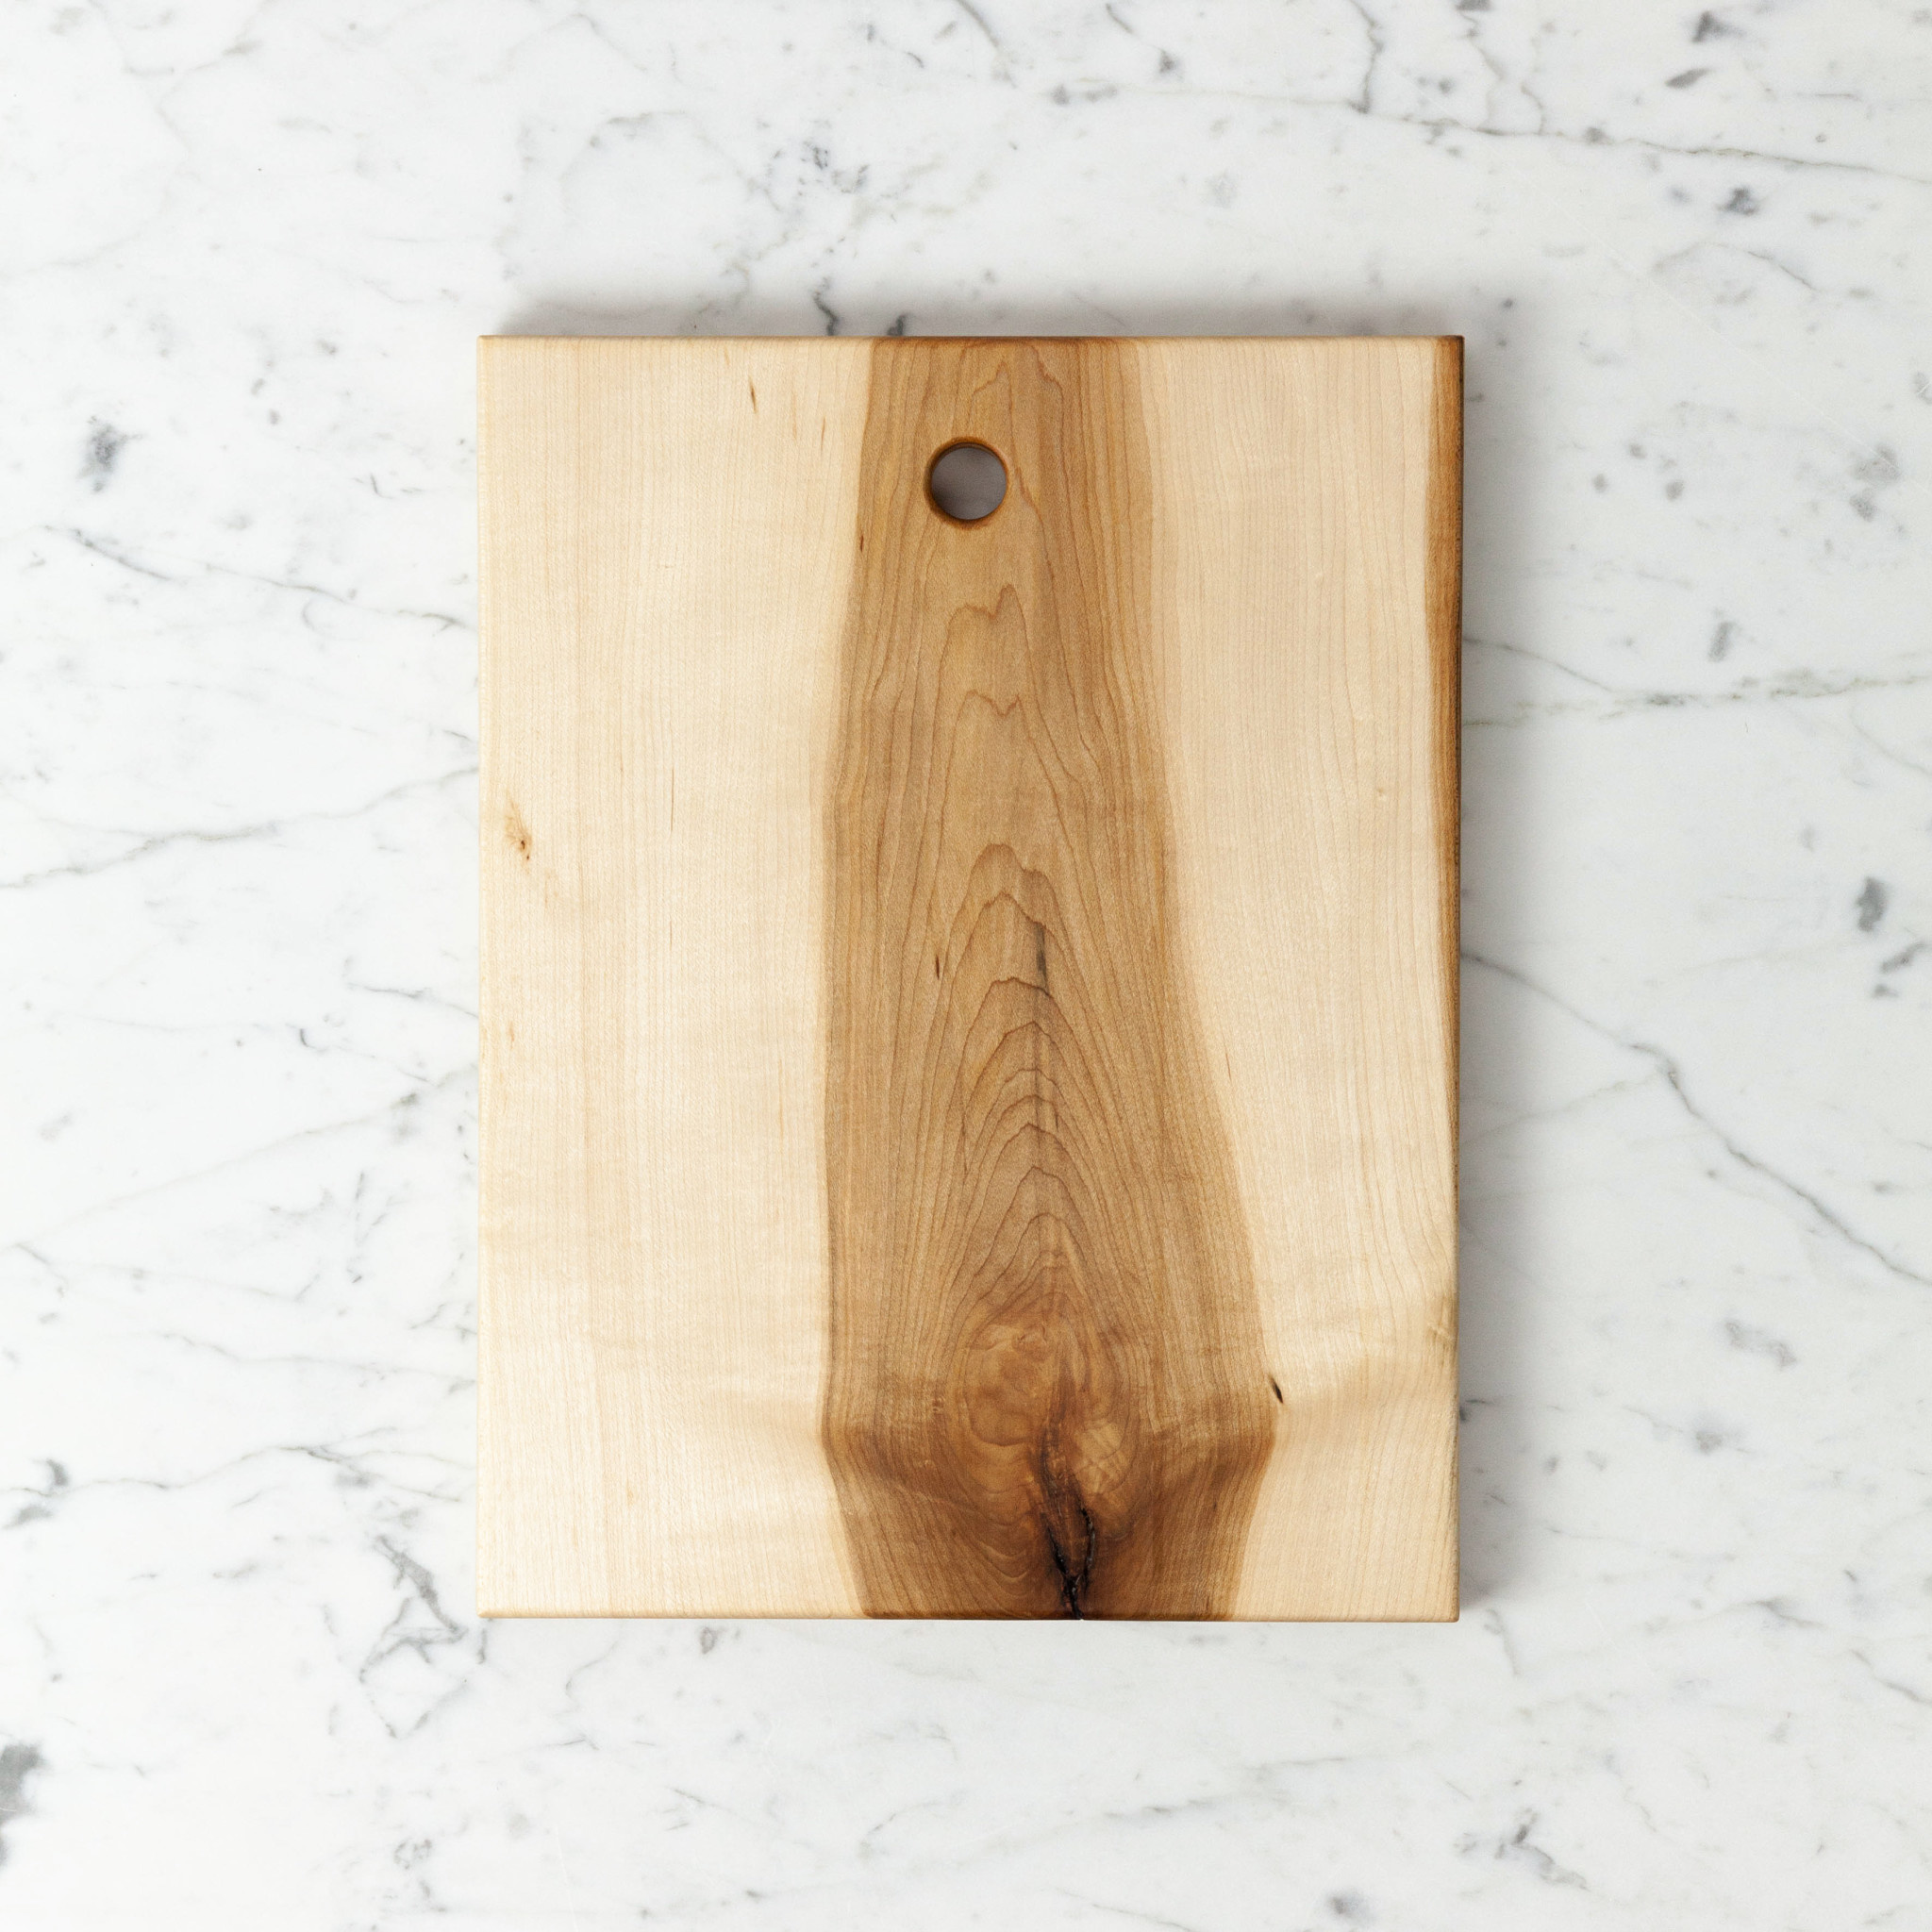 Foundry Maple Cutting Board - Medium - 9 x 12"